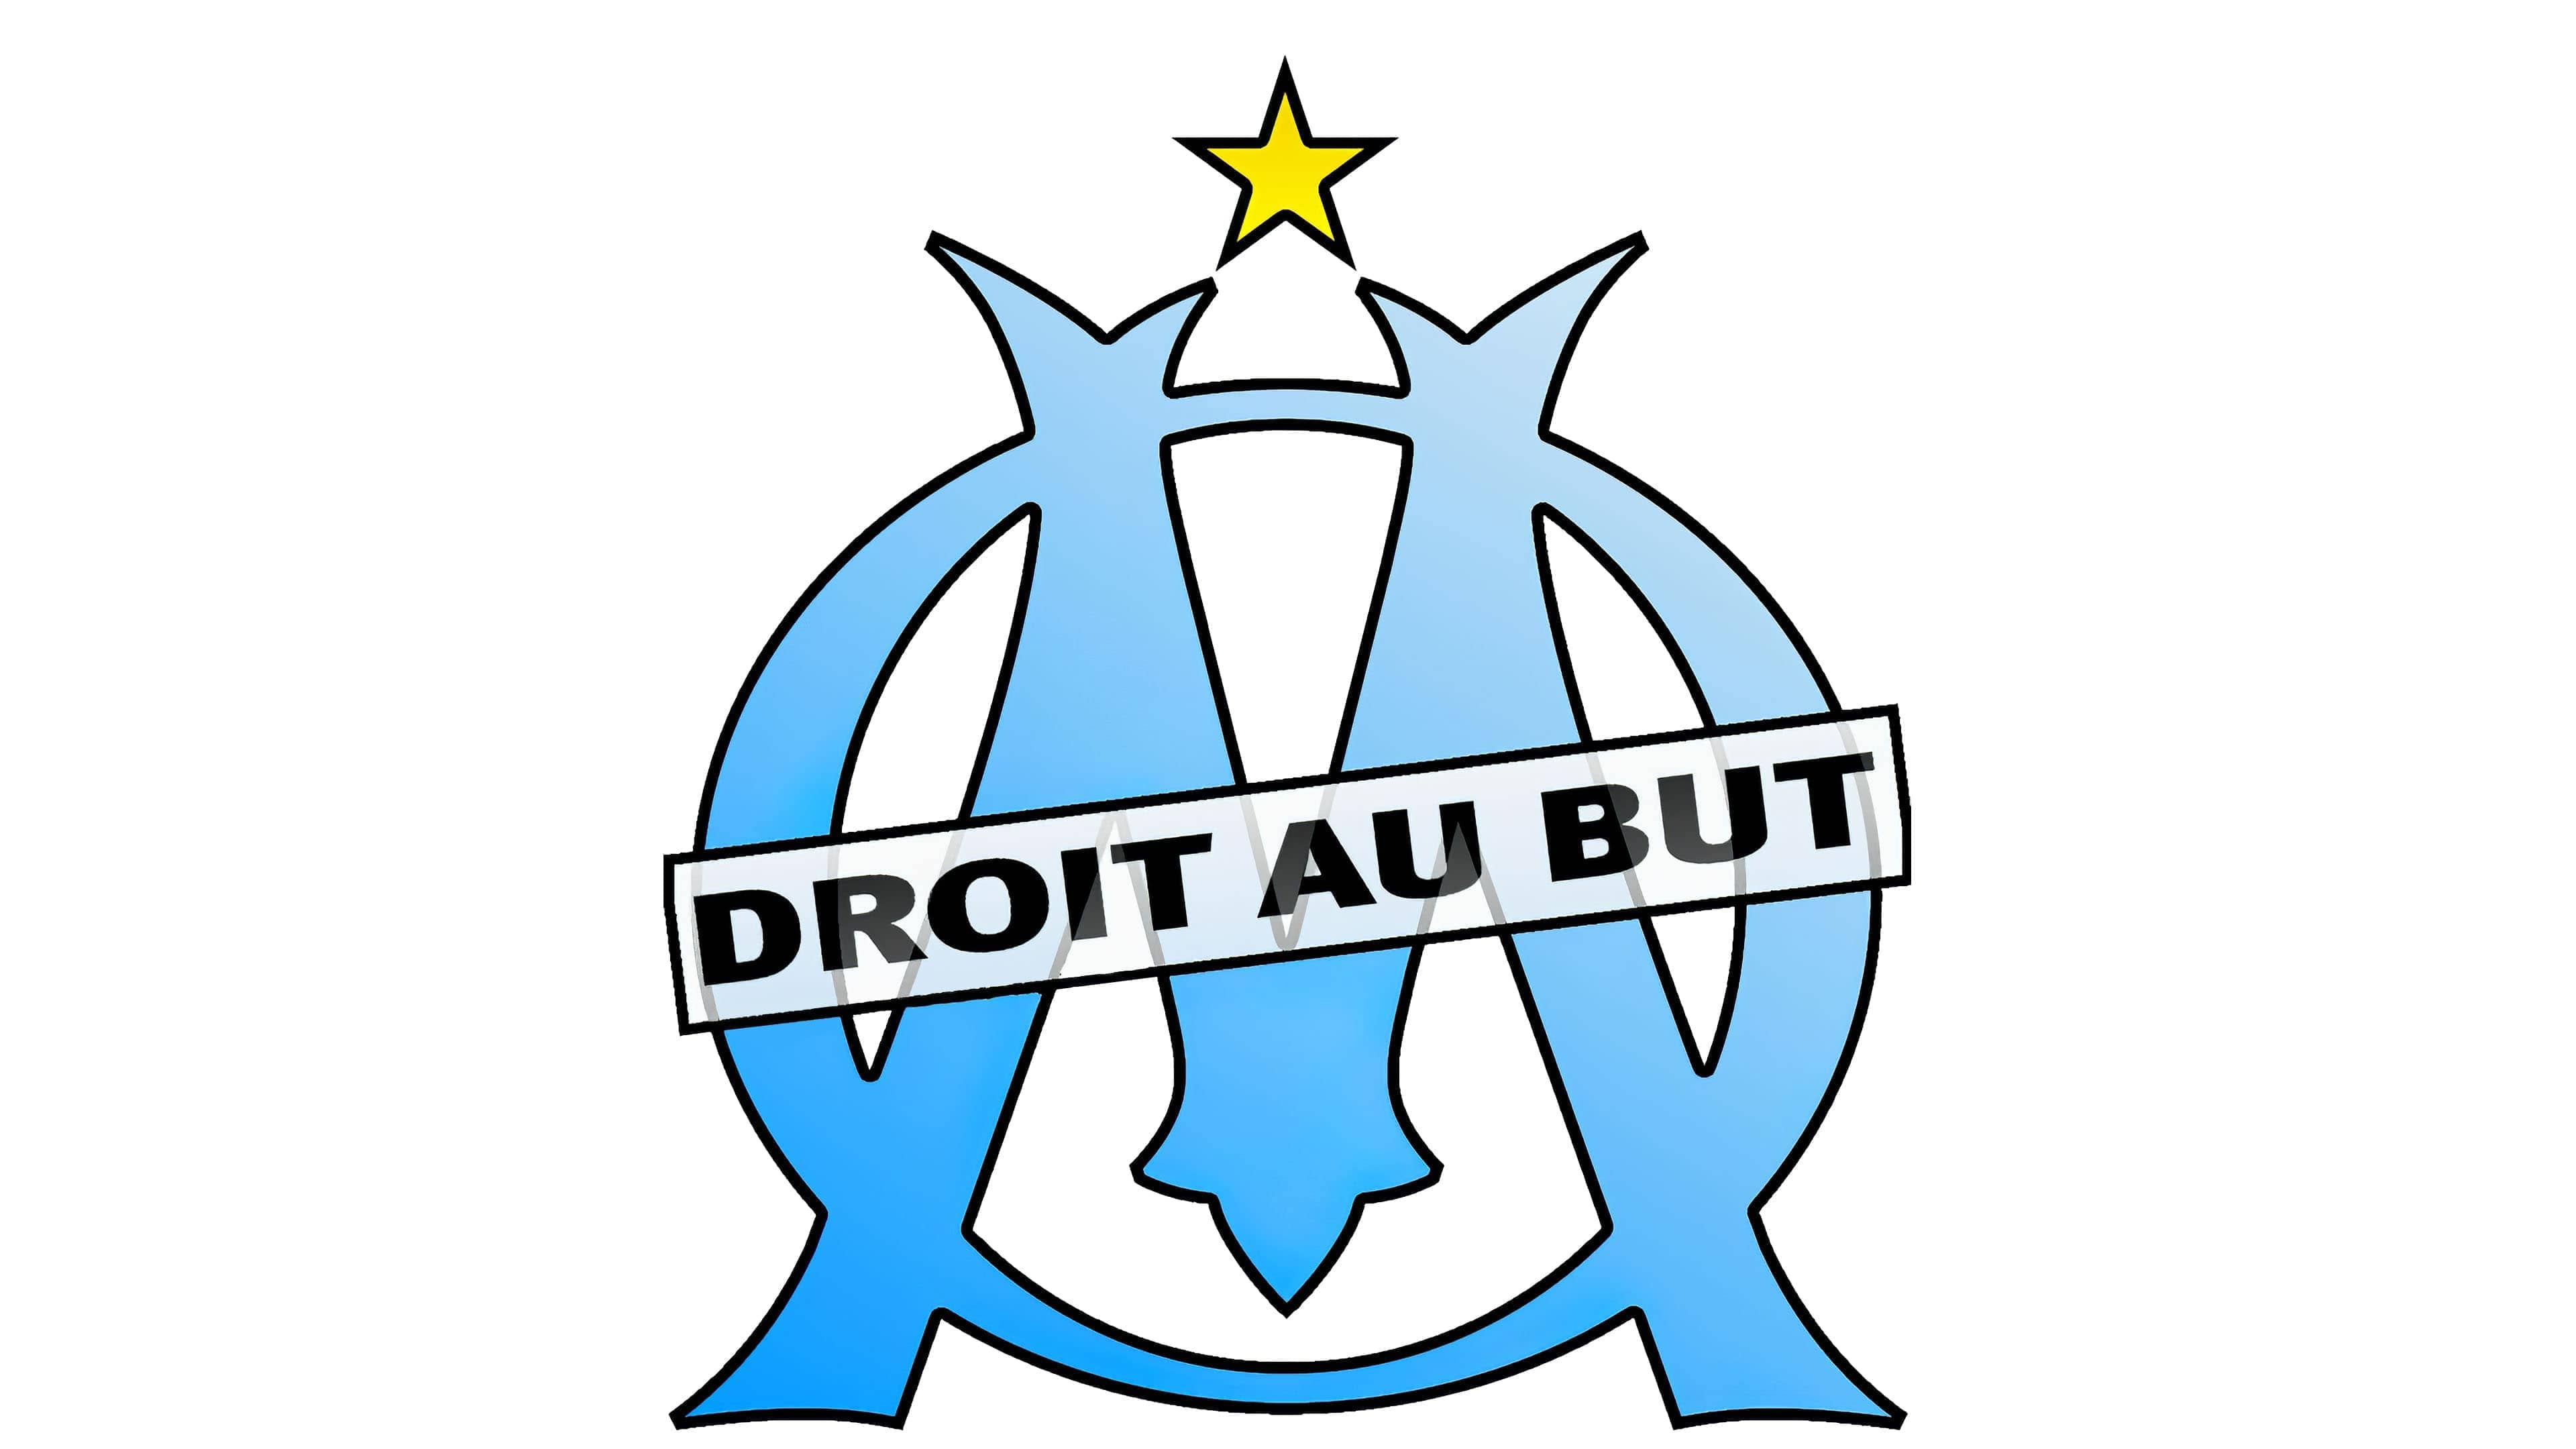 Logo Olympique de Marseille® - Puzzle Officiel en Bois – Iconic